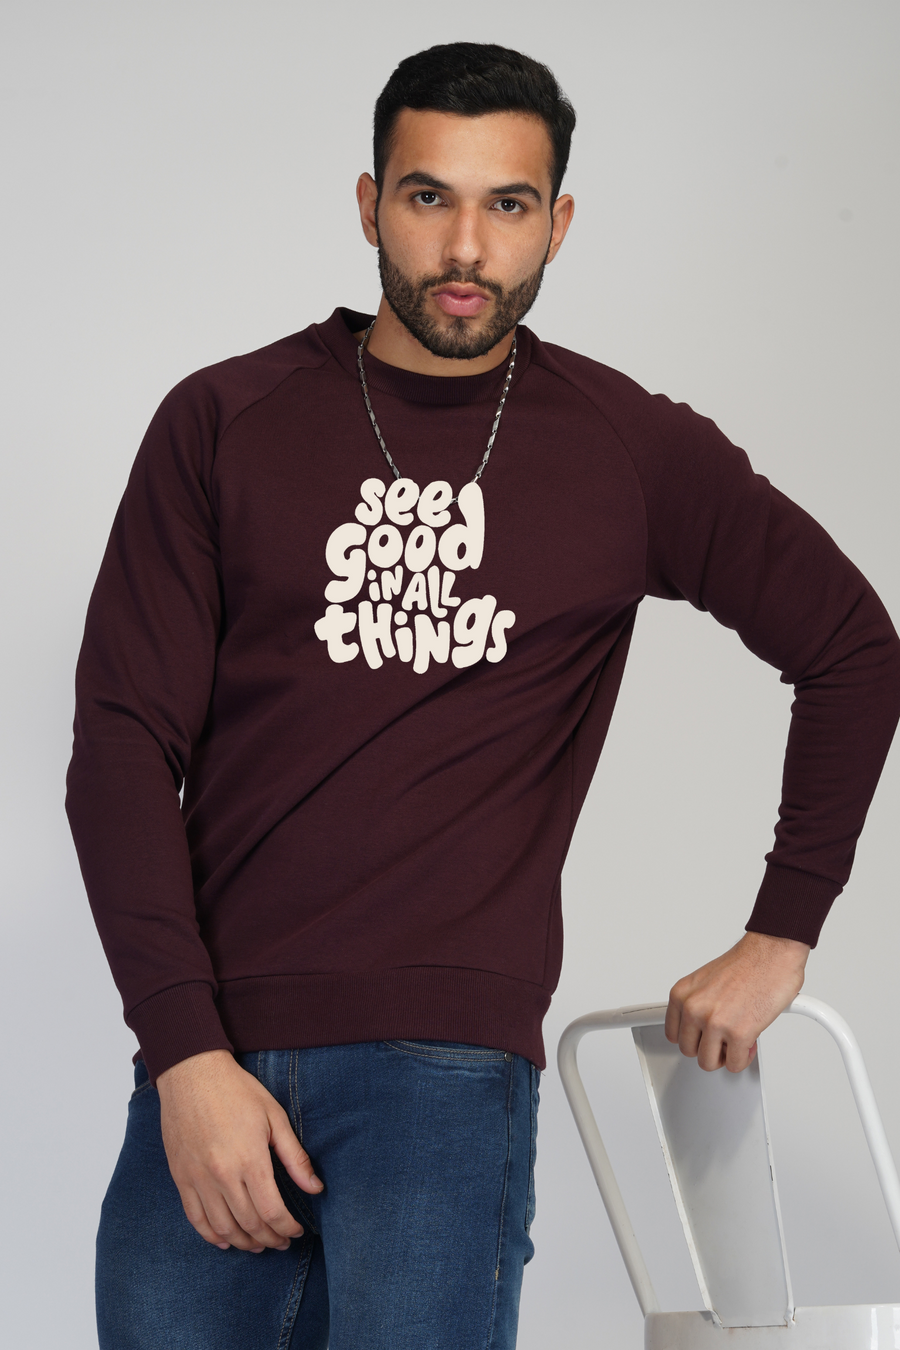 See good in all things- Sweatshirt